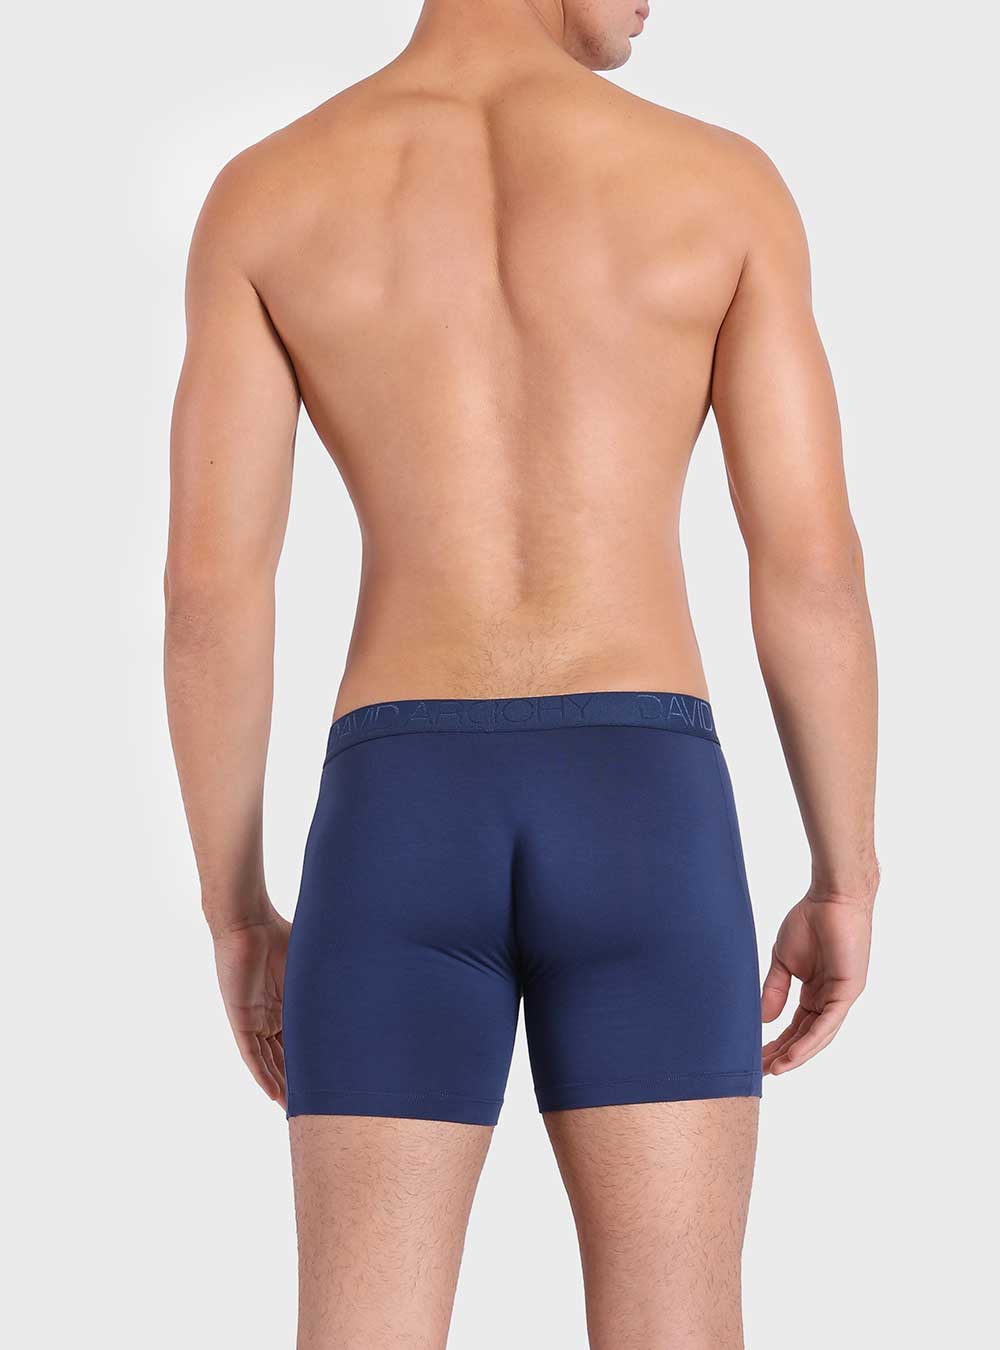 Shop Summer Bummer Men's Long Leg Trunk Underwear